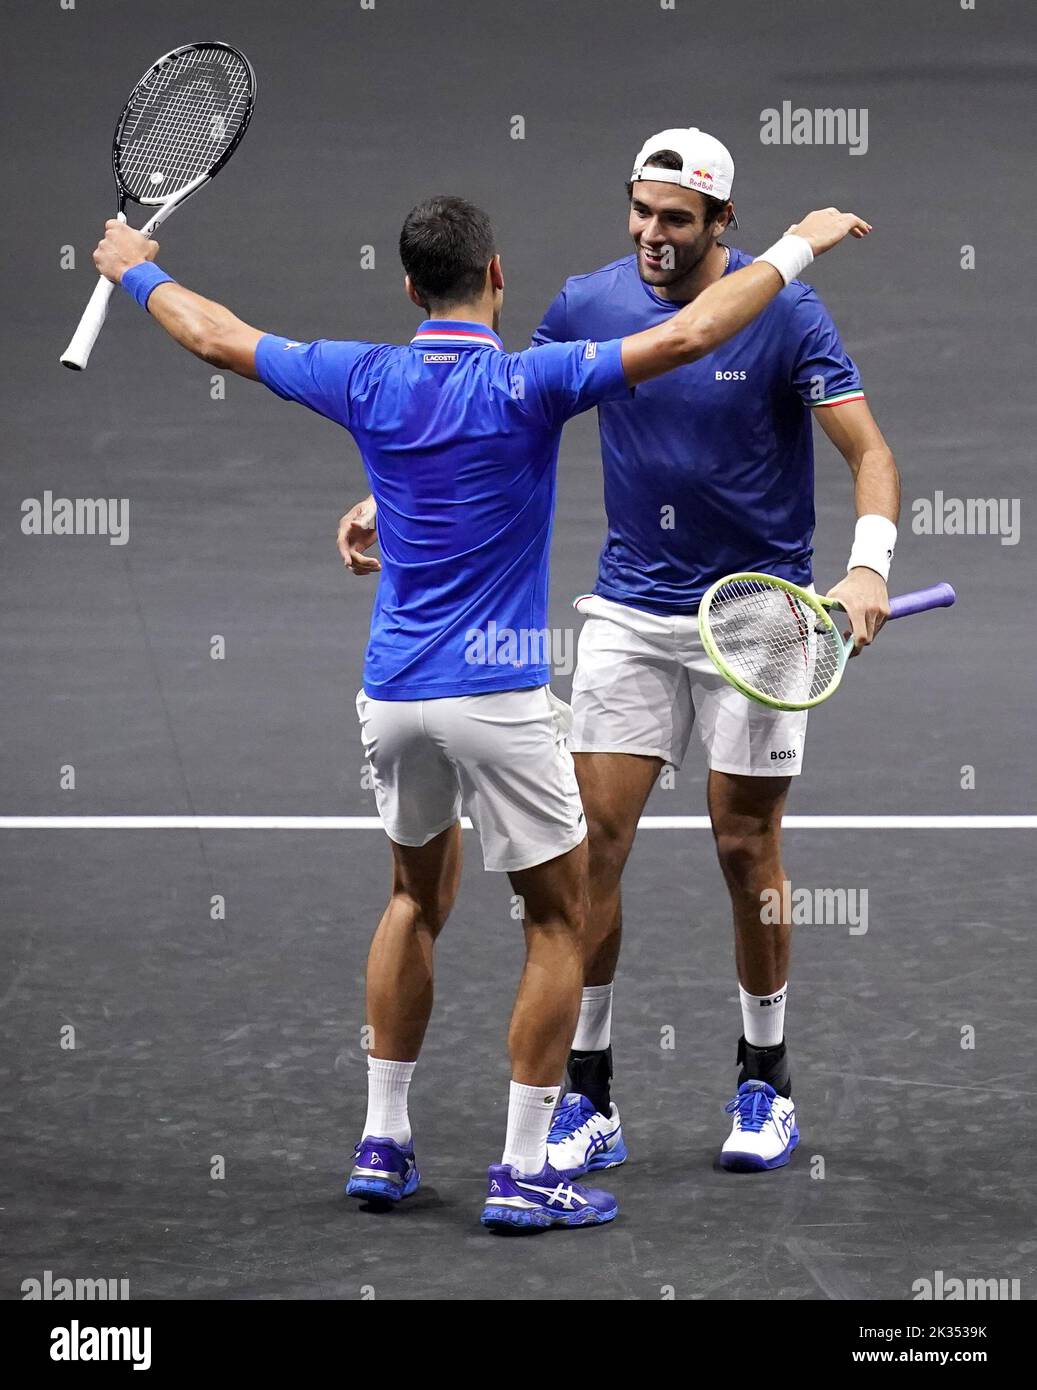 Matteo Berrettini celebra con Novak Djokovic, (izquierda) después de derrotar a Alex De Minaur y Jack Sock en su partido de dobles el segundo día de la Copa Laver en el O2 Arena, Londres. Fecha de la foto: Sábado 24 de septiembre de 2022. Foto de stock